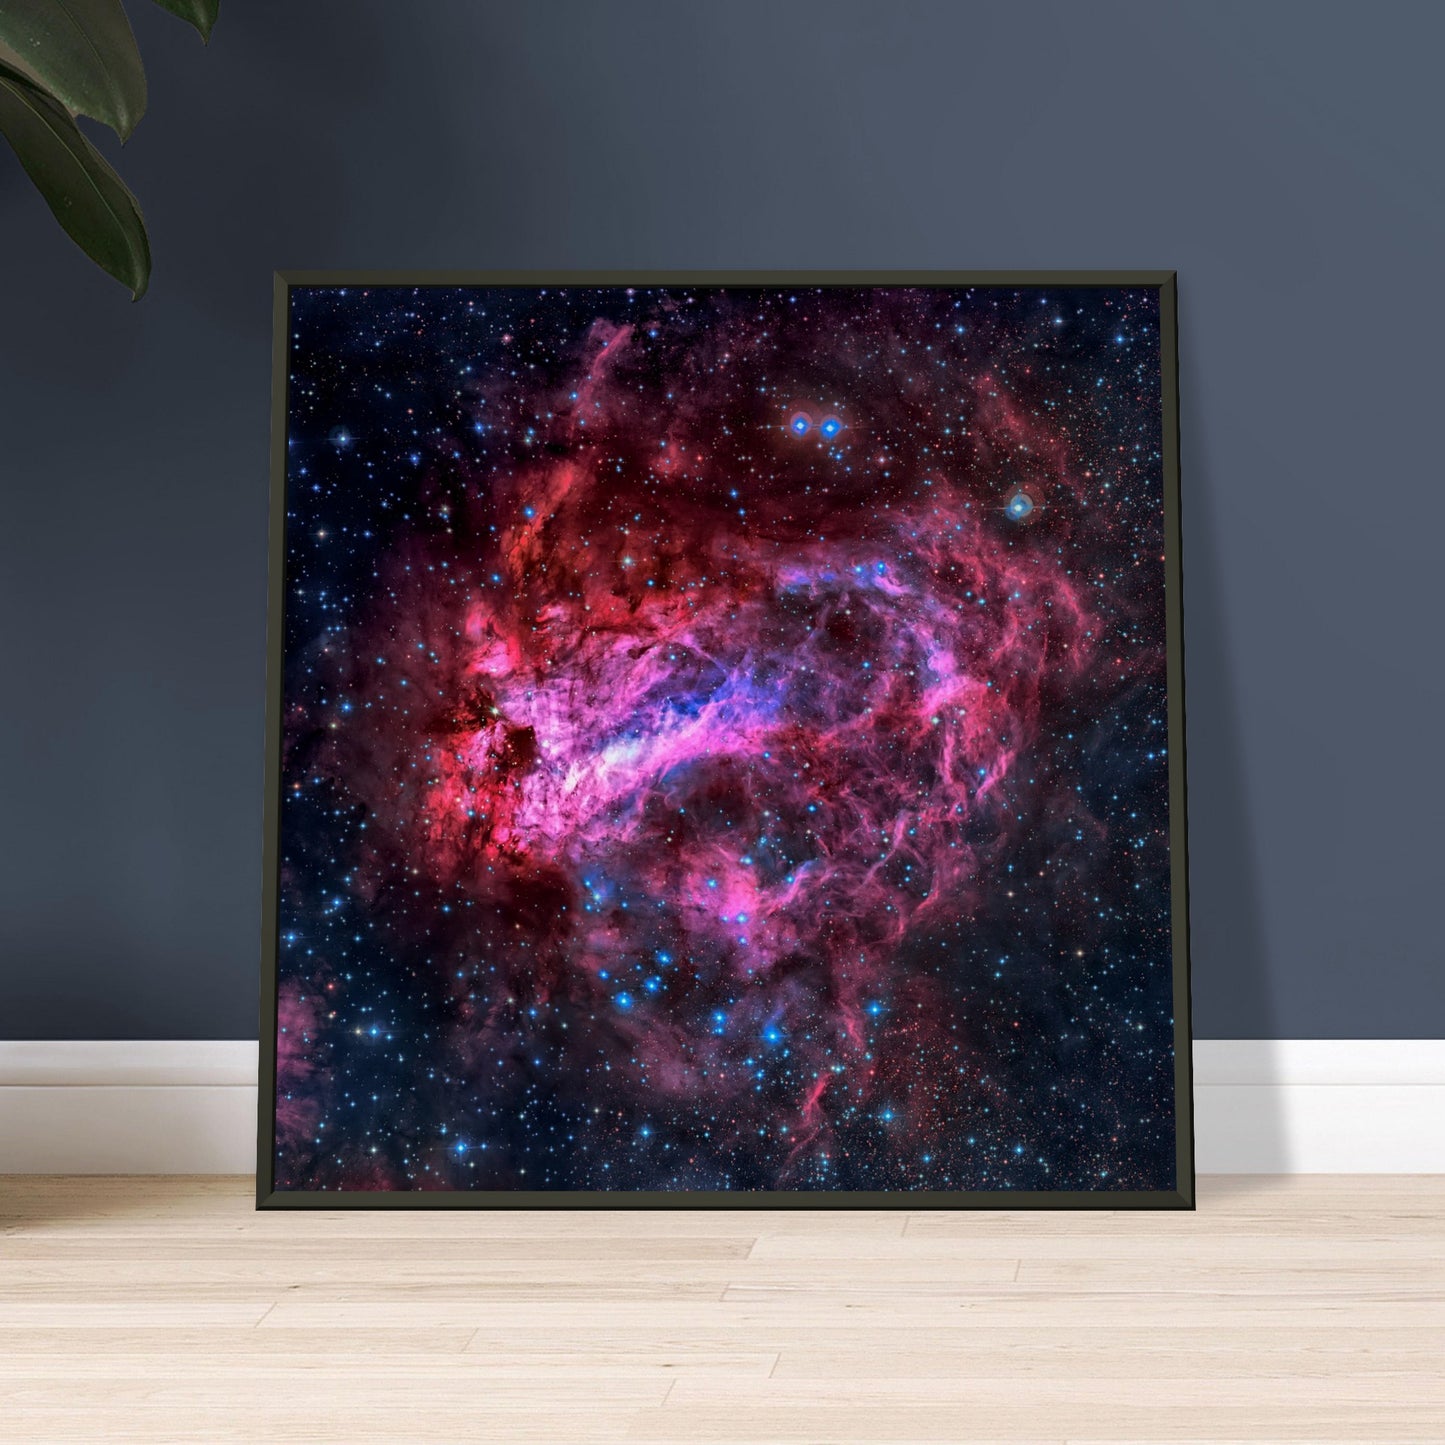 The Omega Nebula